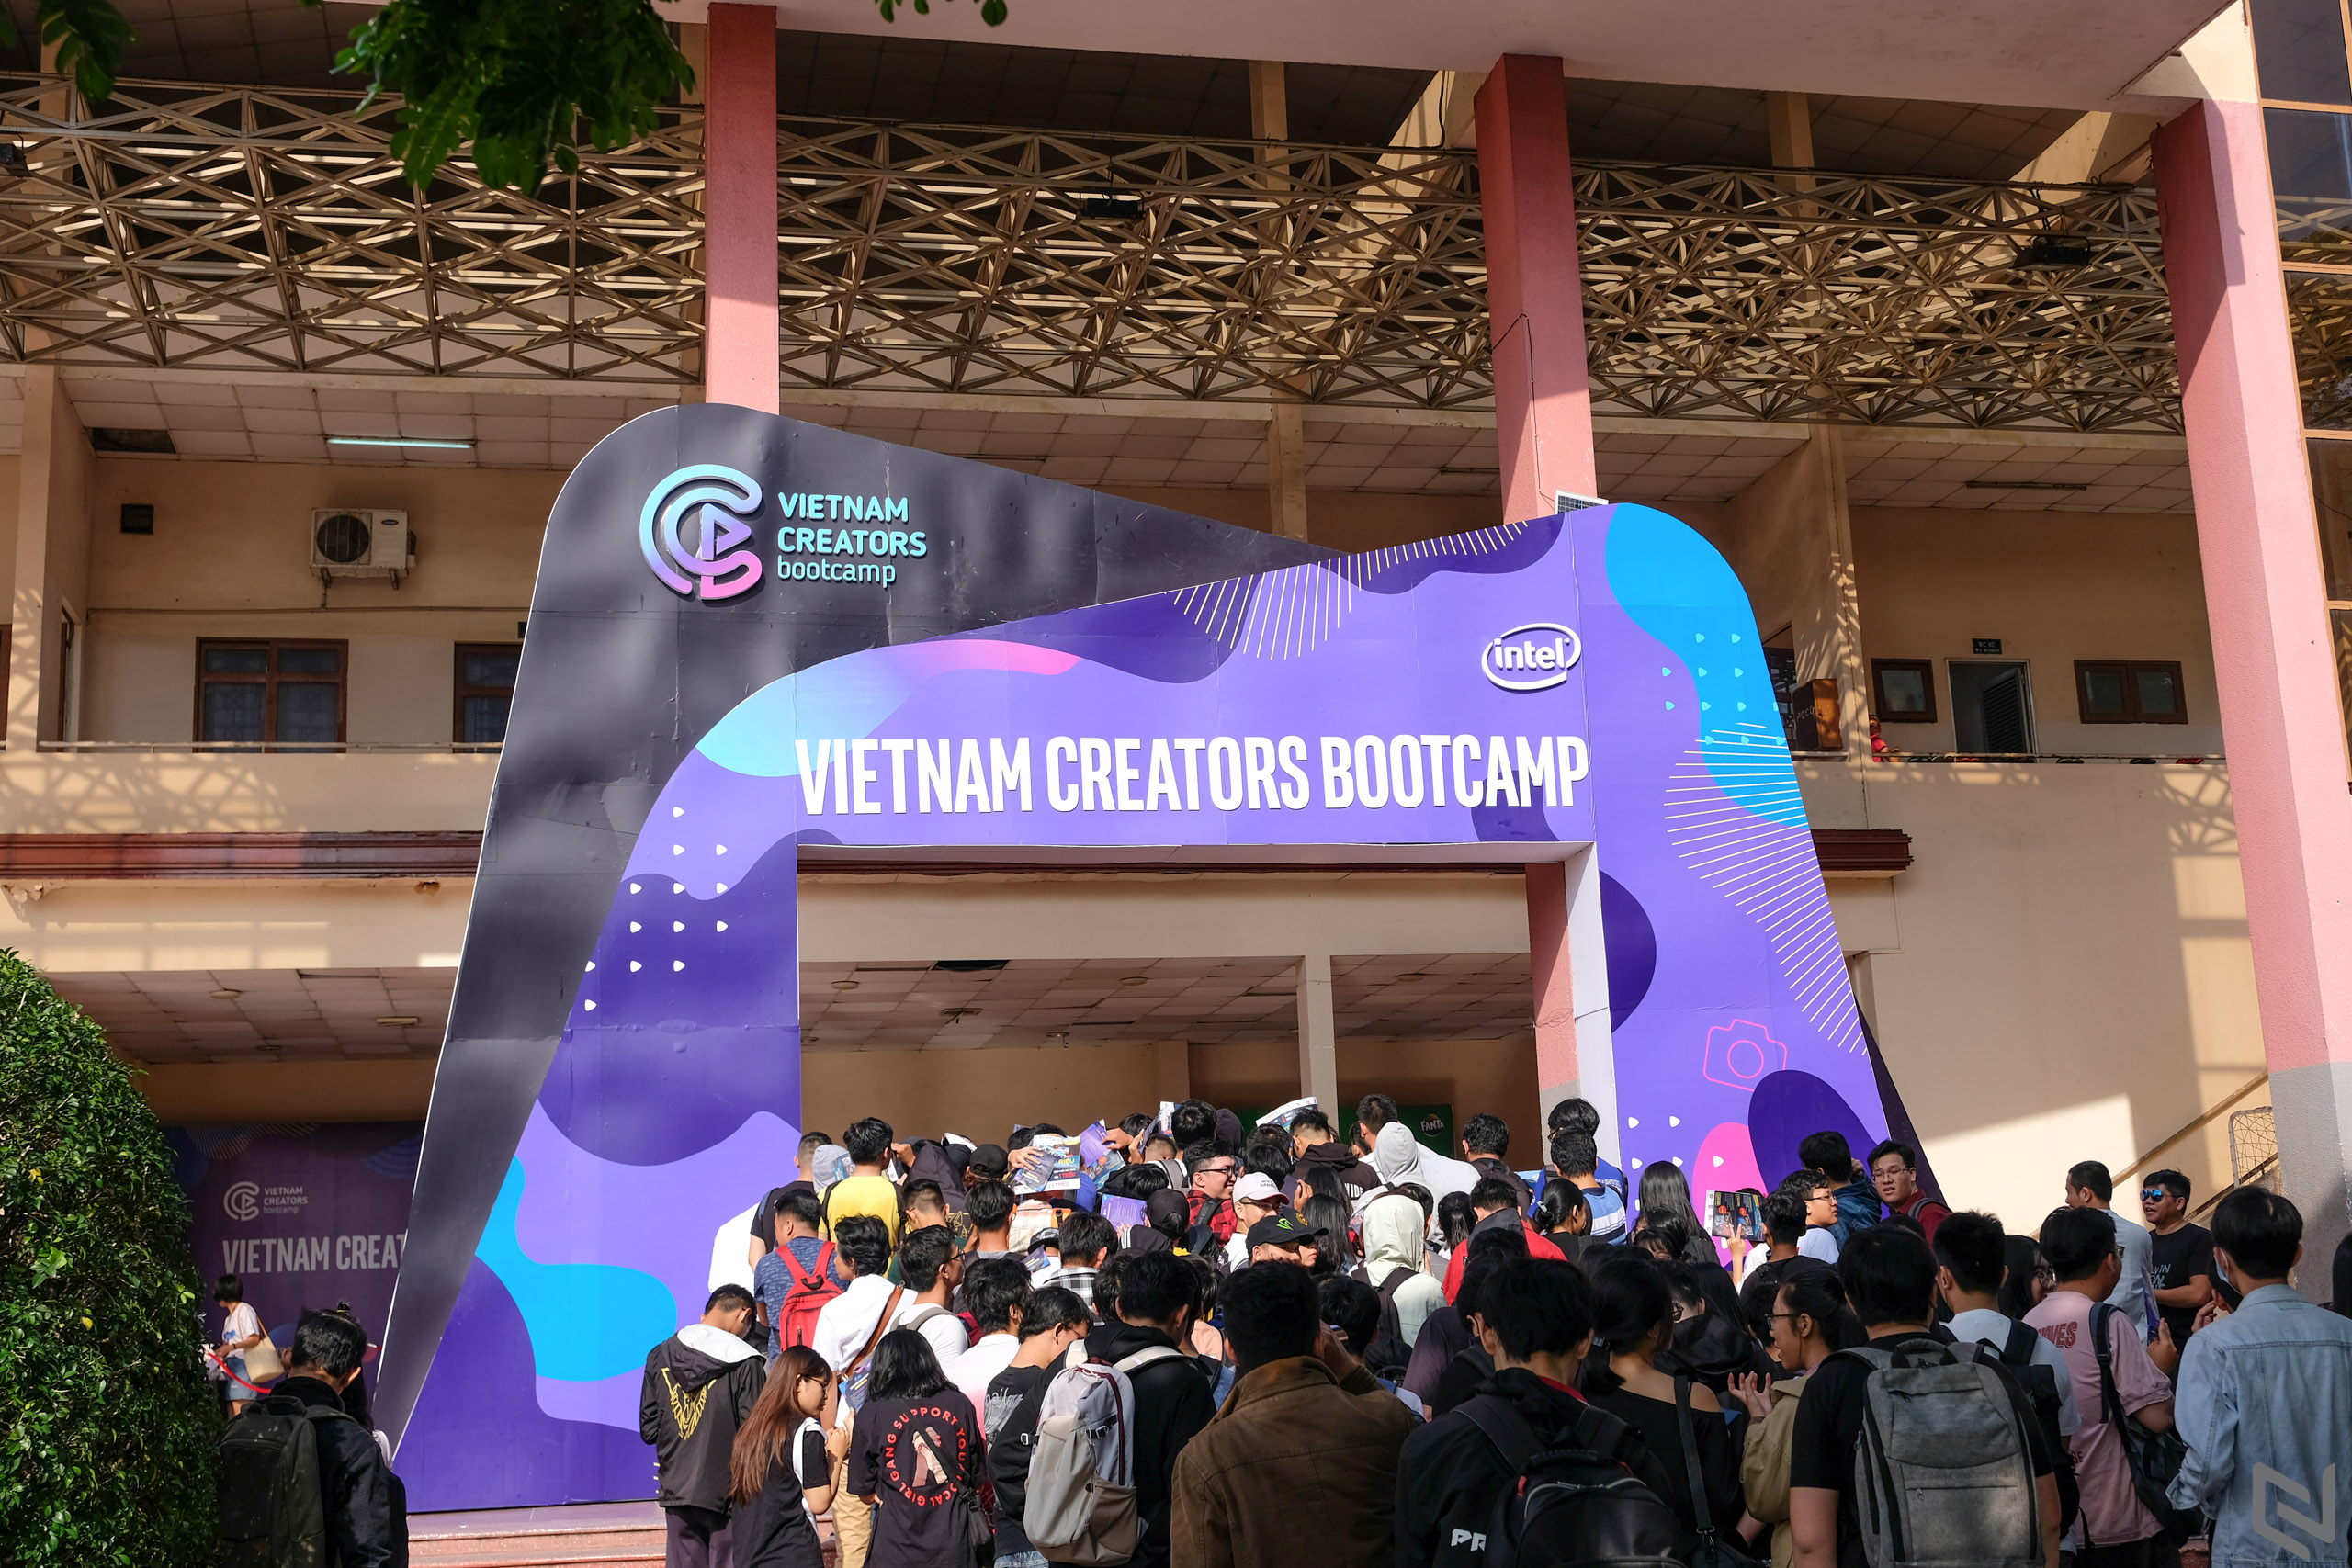 Vietnam Creators Bootcamp, ngày hội tôn vinh những nhà sáng tạo